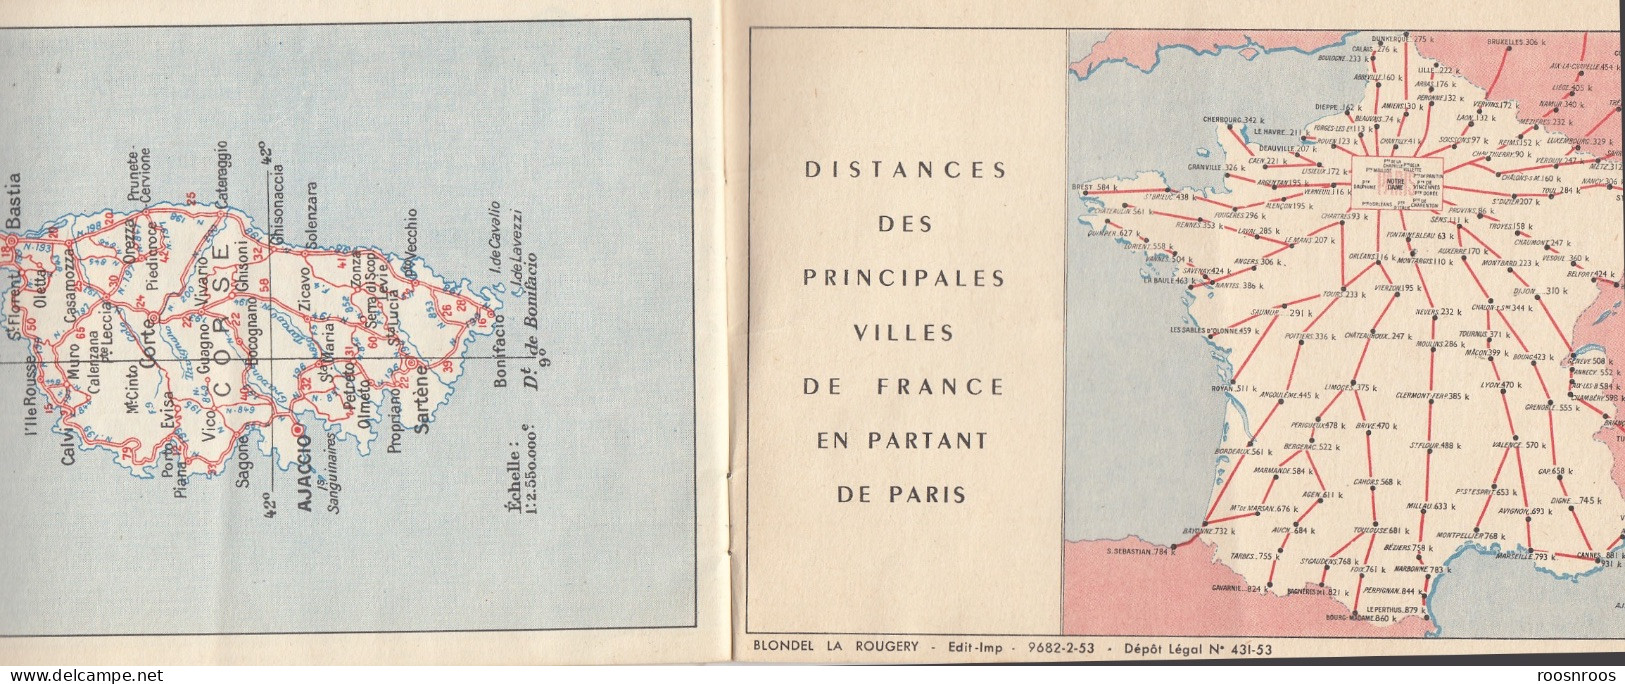 LIVRET LES ROUTES DE FRANCE AU 1/300 000  - CHAINE BP ENERGIC - LISTE DES STATIONS  ESSENCE BP 1953 - Cartes Routières